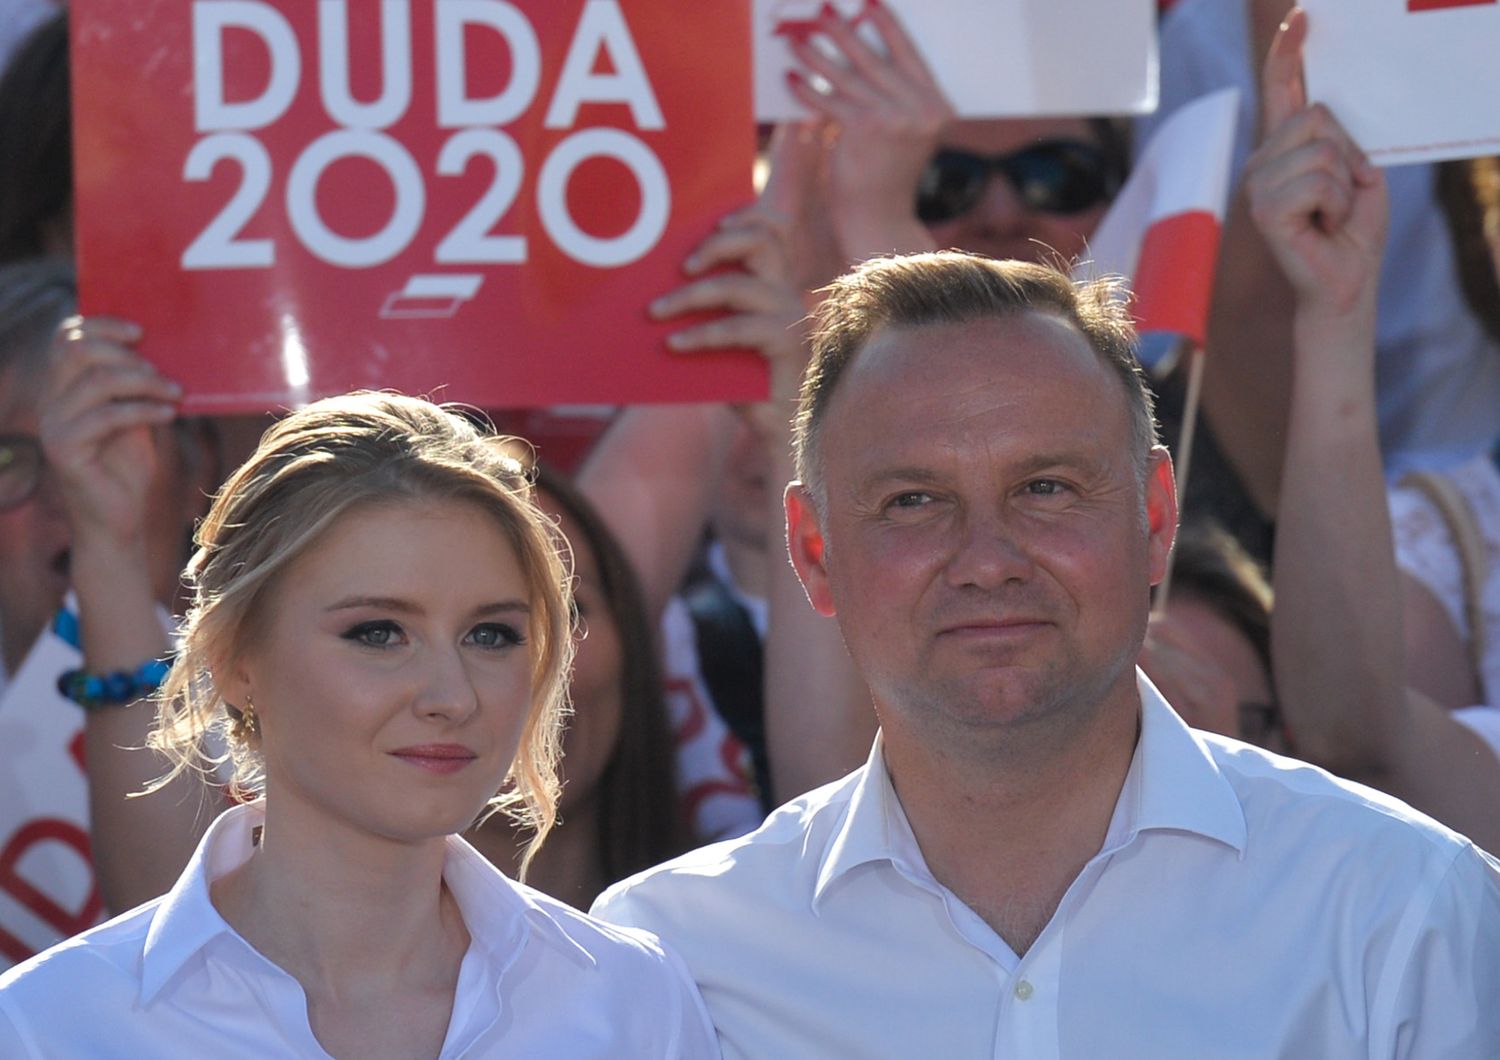 Polonia&nbsp;ballottaggio Duda Trzaskowsky